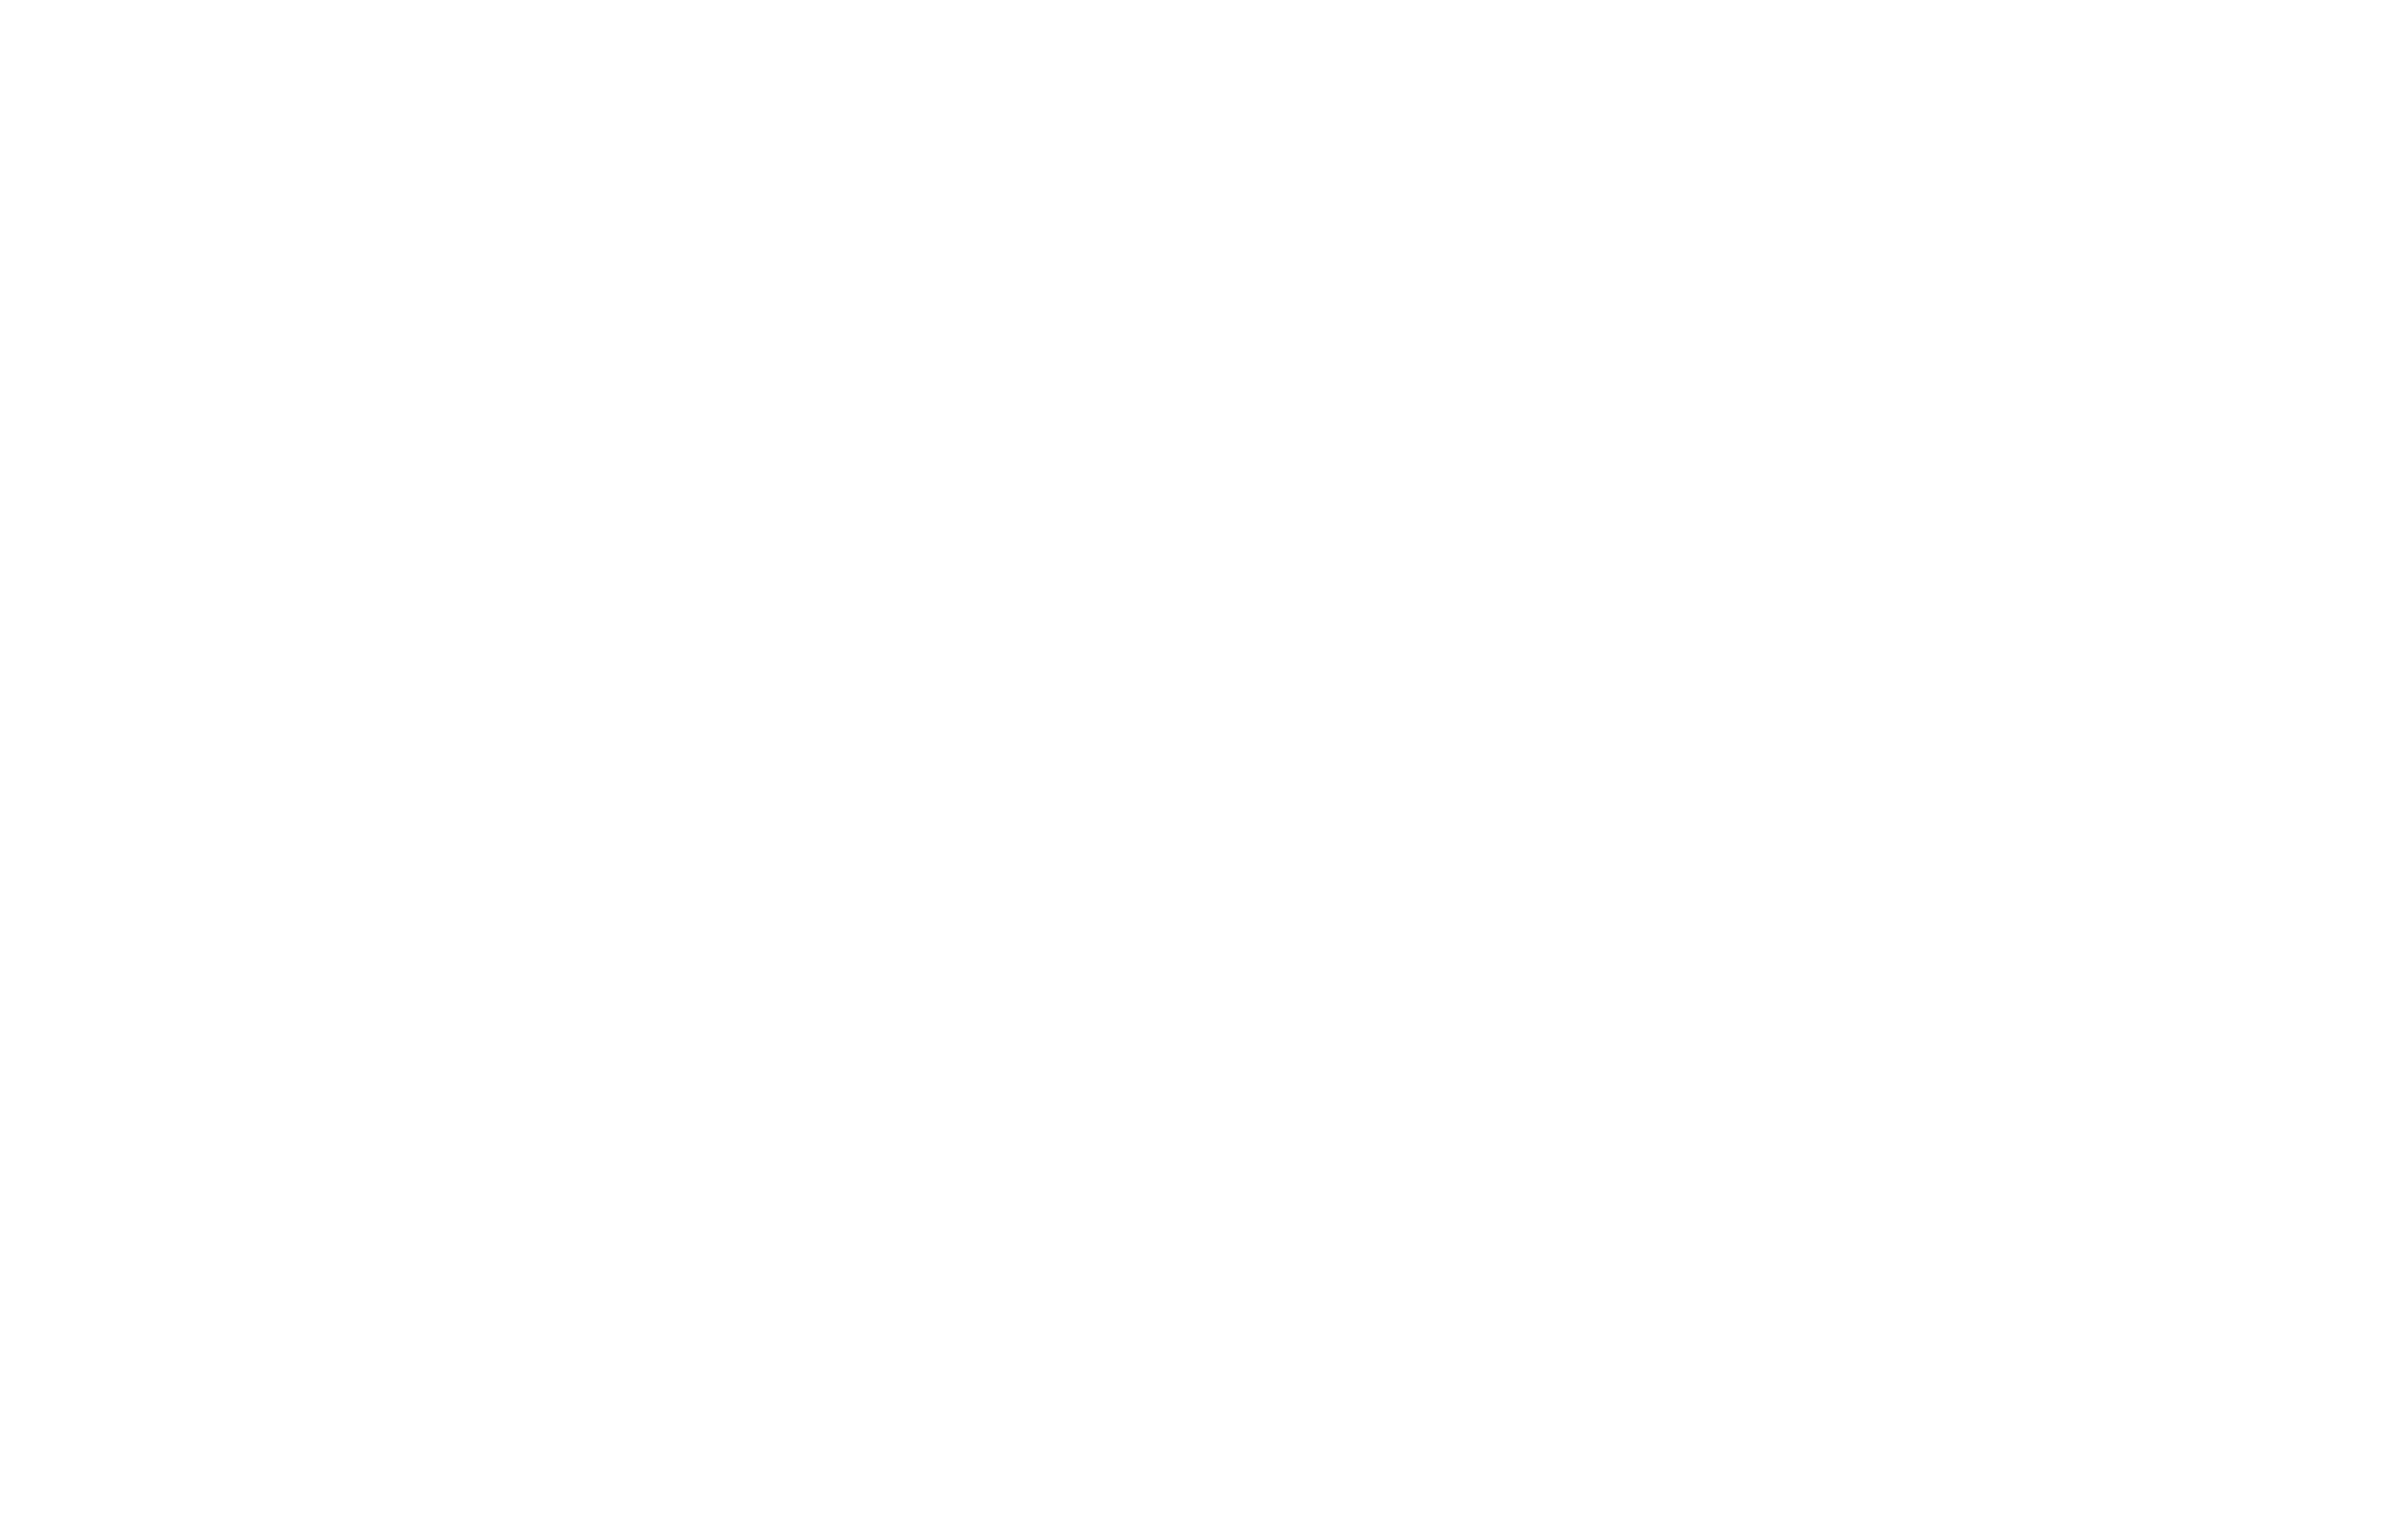 Pandelaar historic racing